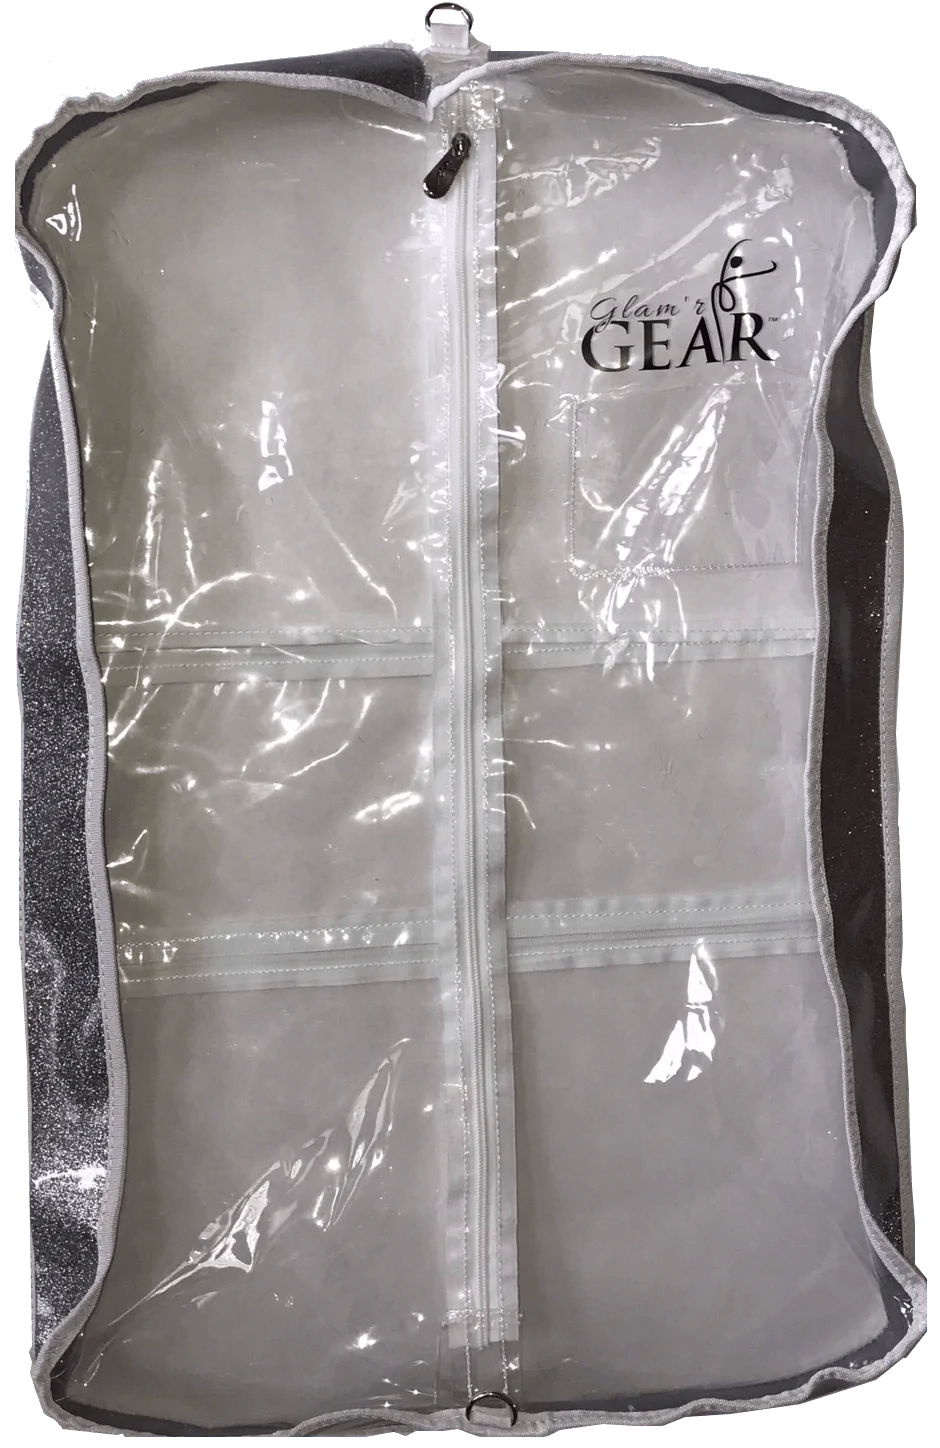 Glam'r Gear Garment Bags